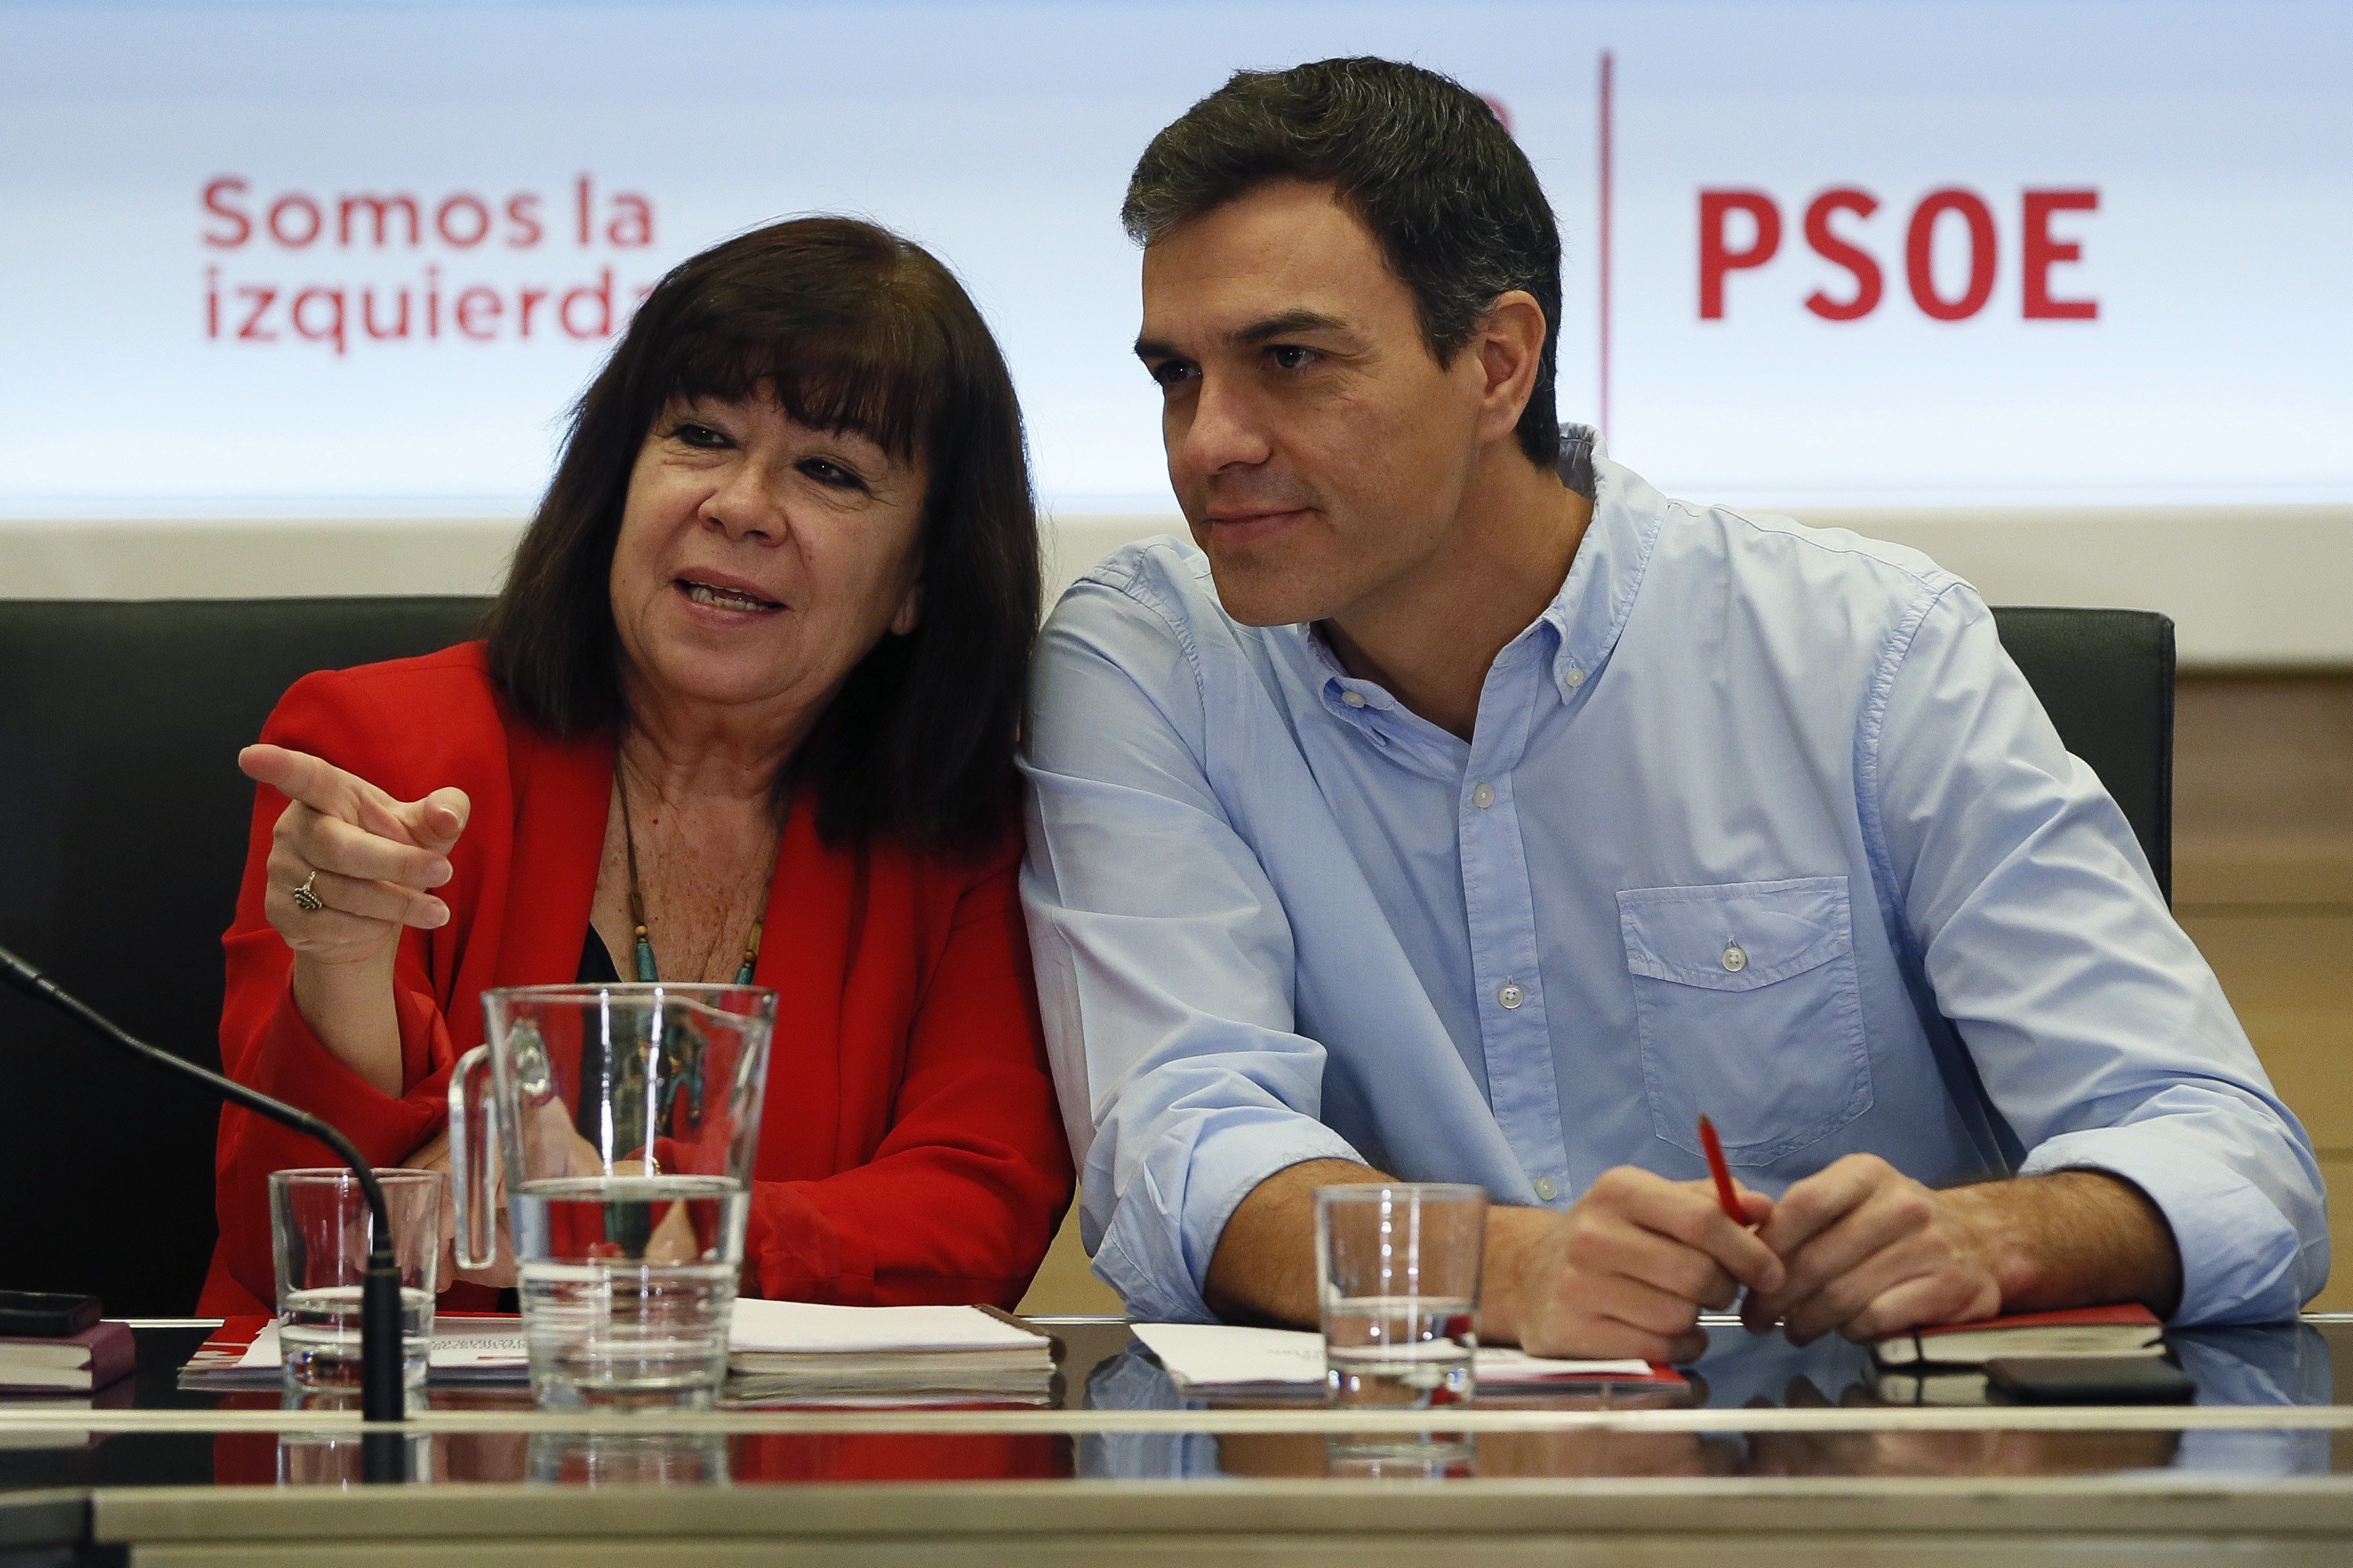 El PSOE pide "medidas políticas" para evitar el referéndum